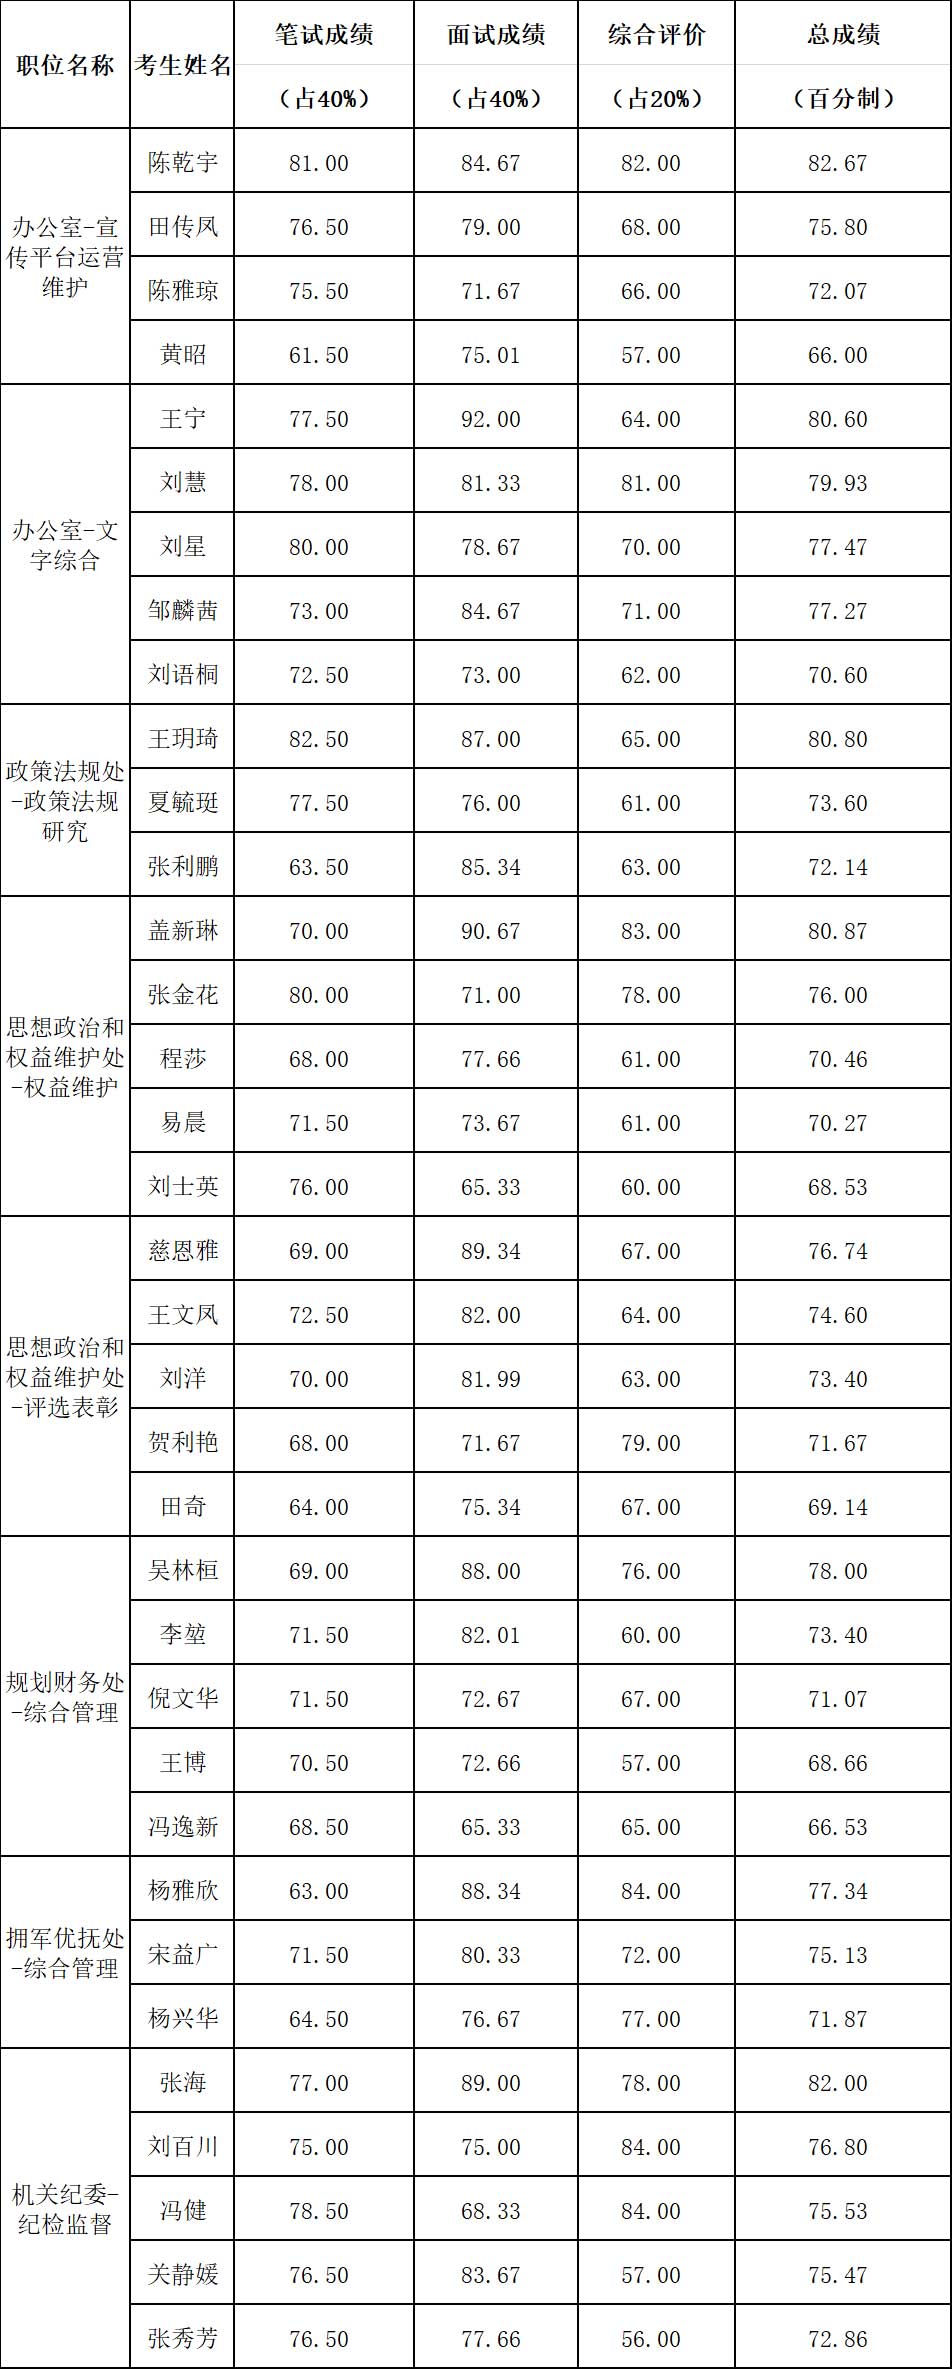 北京市退役军人事务局 2020年公开遴选公务员成绩.jpg